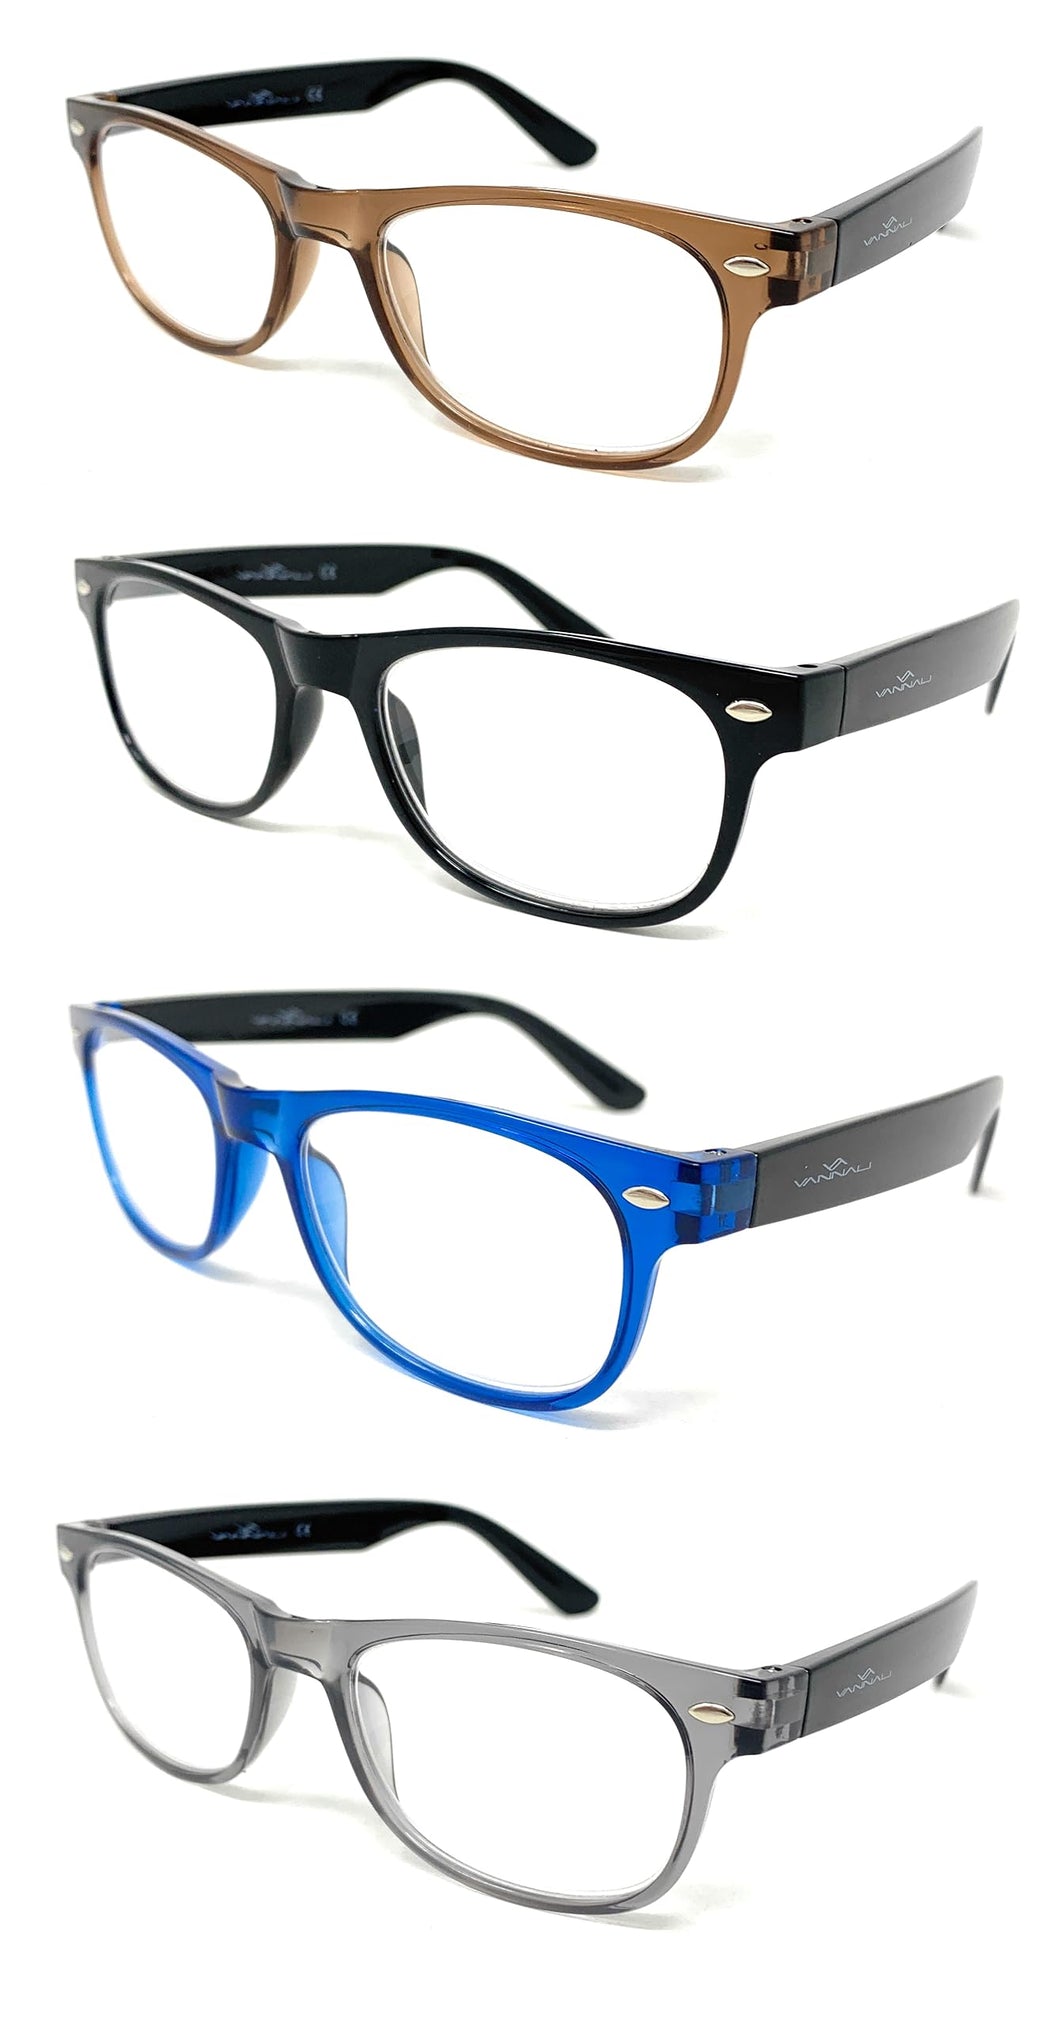 Pack 4 gafas de presbicia marca Vannali modelo Way - Siempre tendrás un par a mano, estés donde estés.